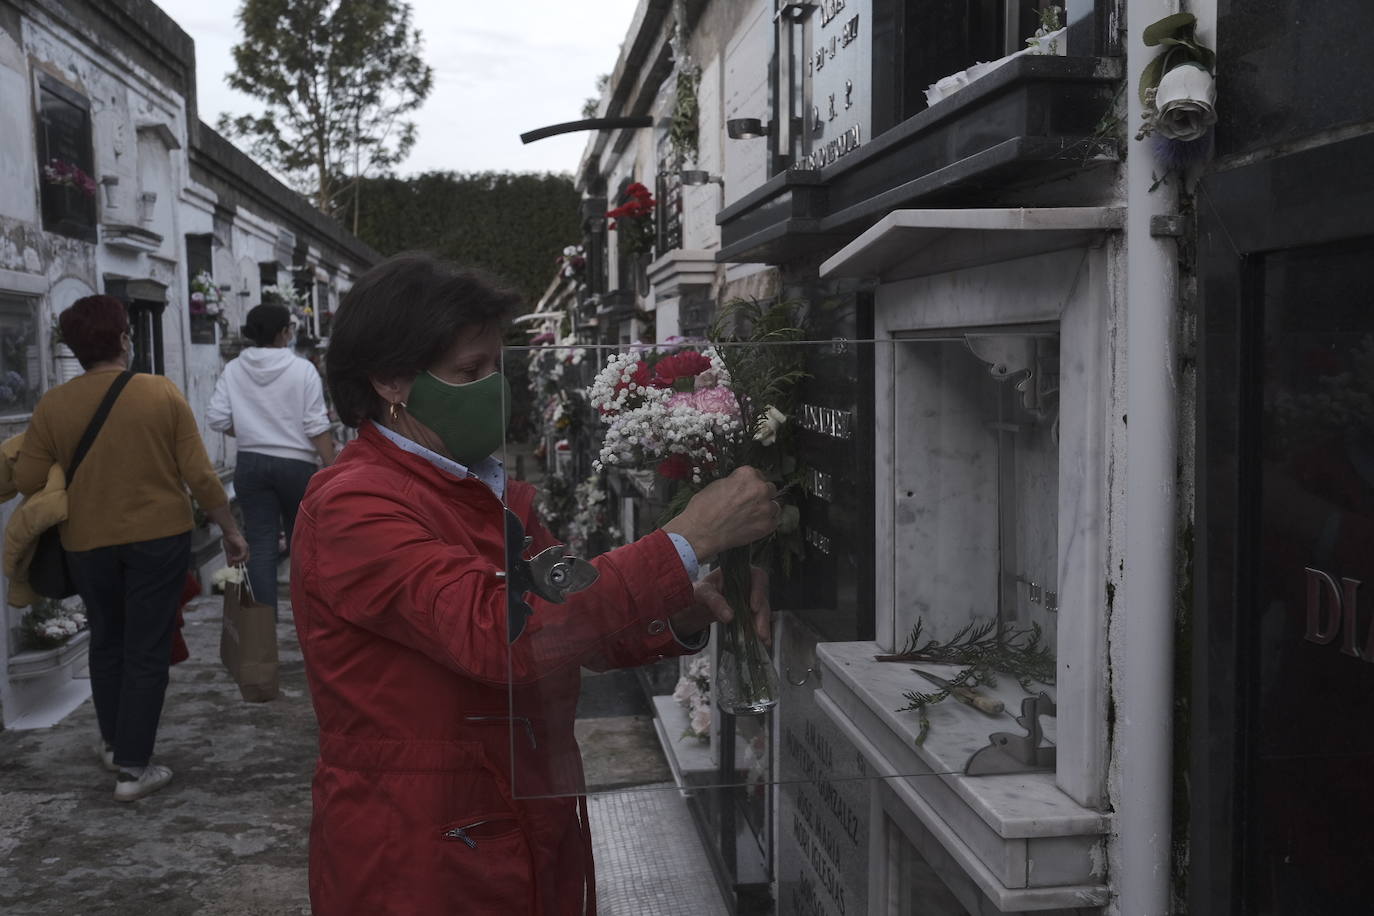 Fueron muchos los asturianos que se acercaron este sábado a los cementerios para evitar las aglomeraciones del Día de Difuntos. Tal y como recomendaron las autoridades, las visitas se están haciendo de manera escalonada.